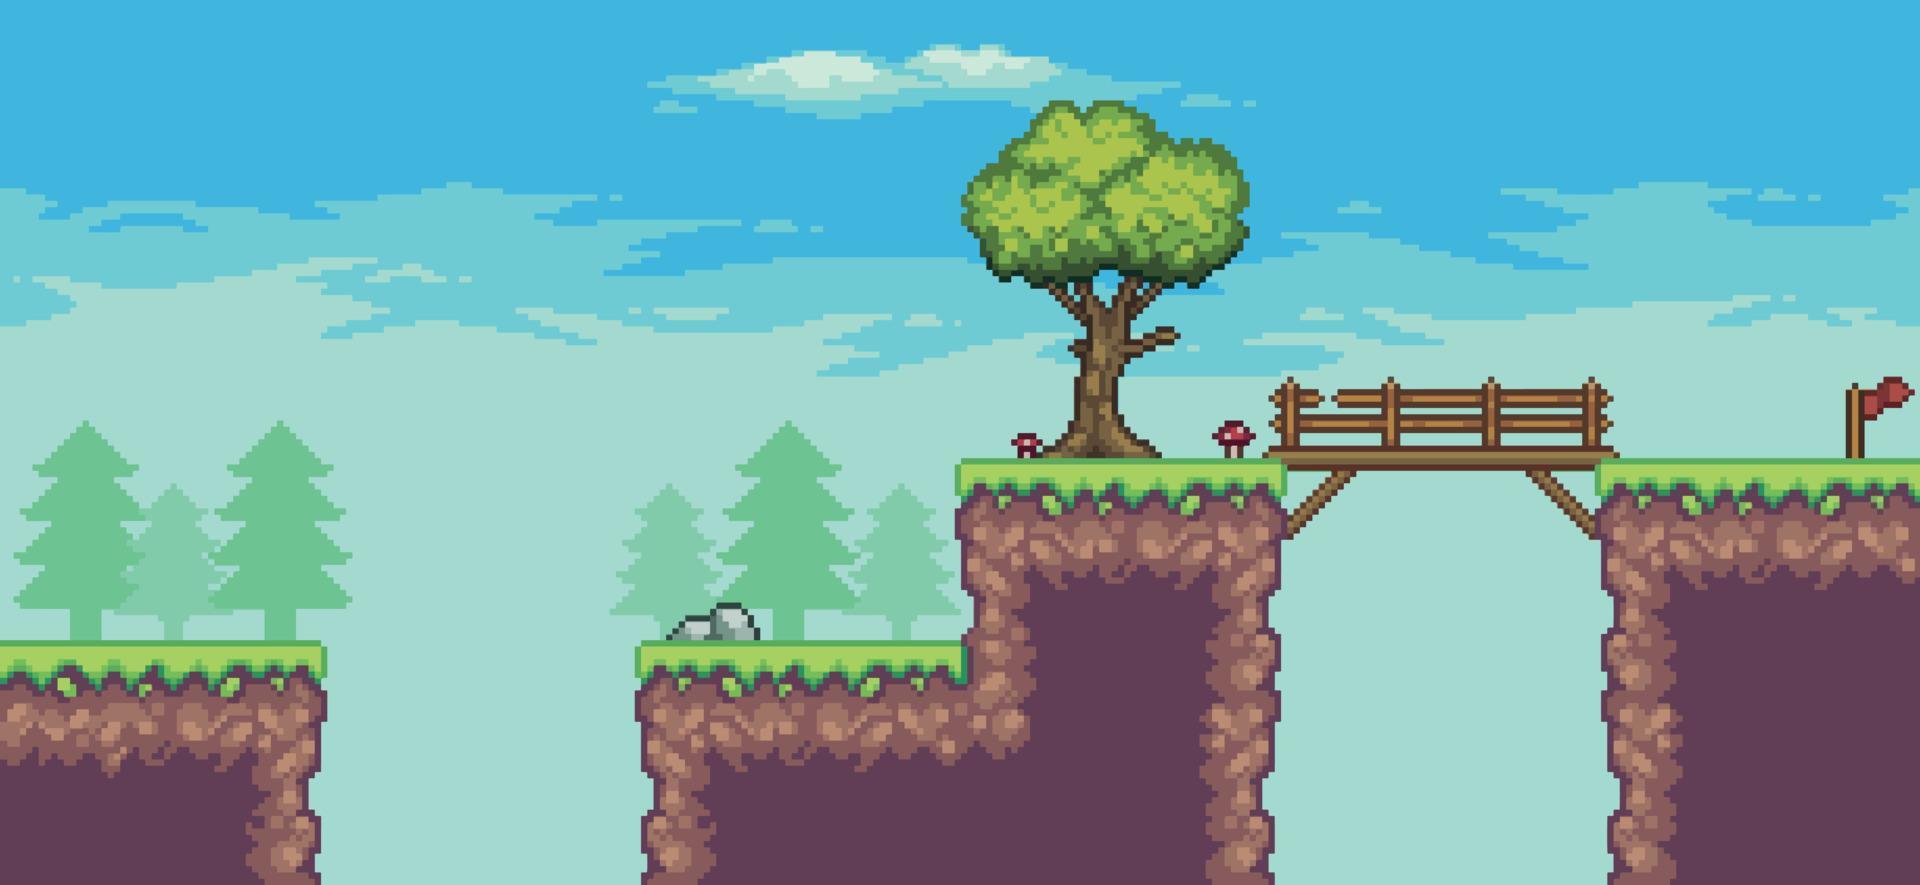 pixel art arcade game scene met bomen, brug, wolken en stenen 8bit achtergrond vector